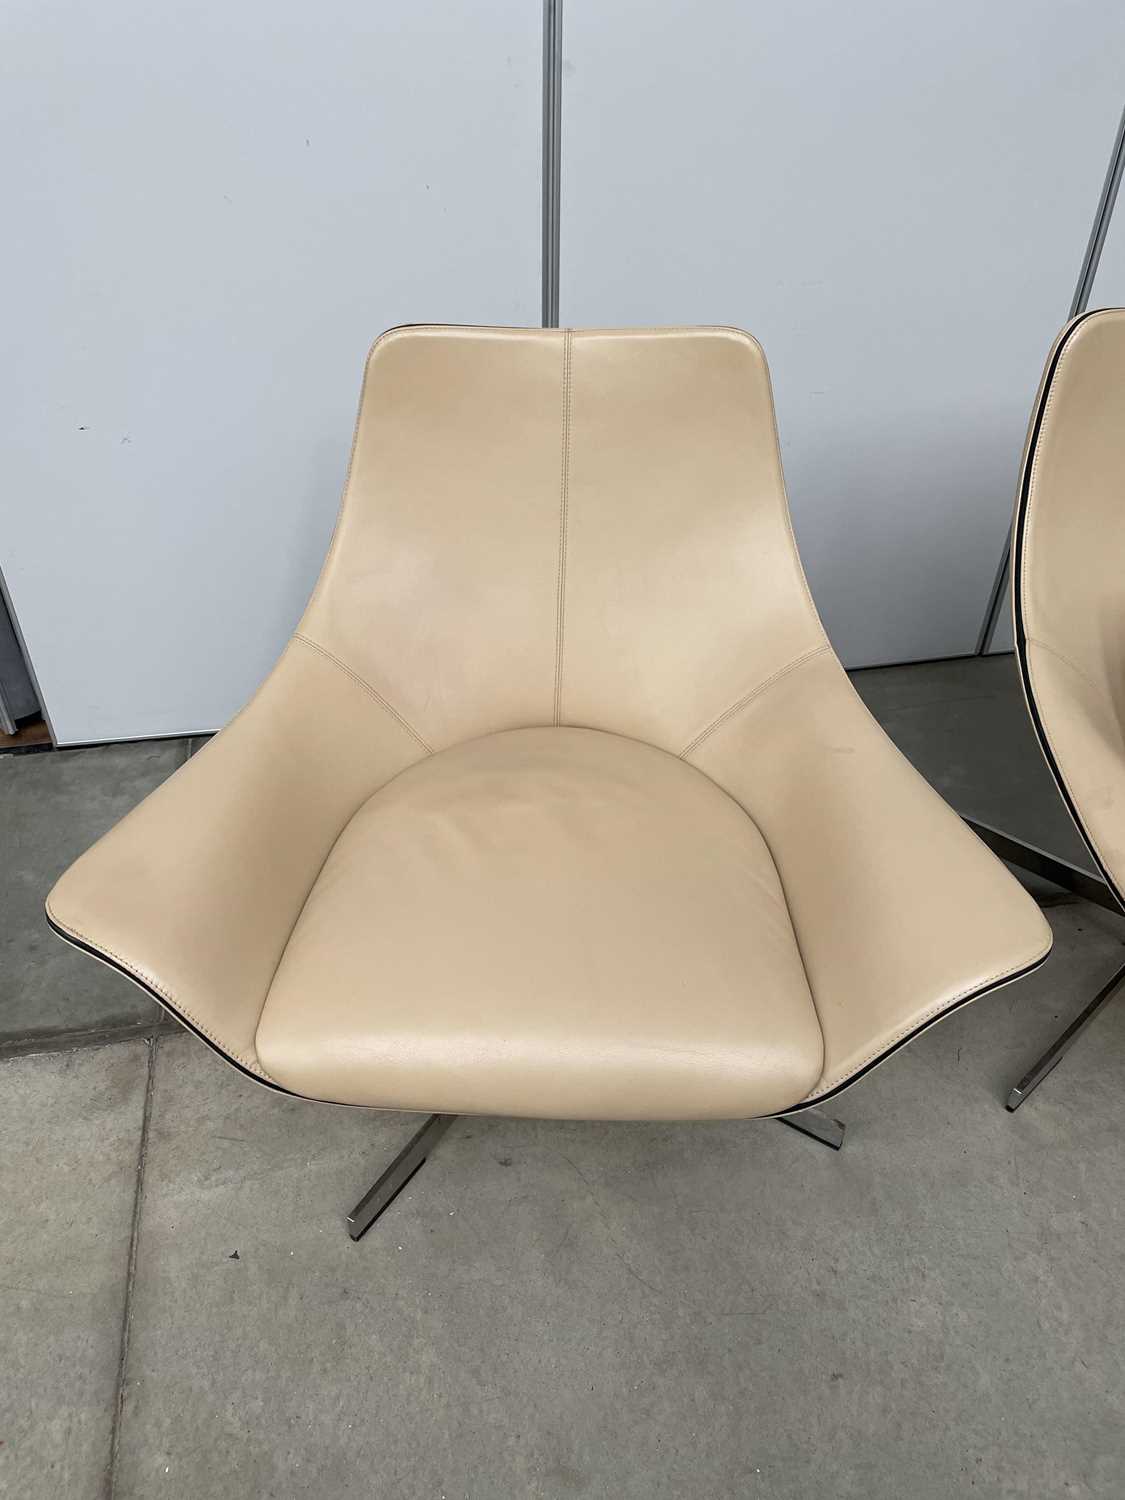 Rodolfo Dordoni for Matteo Grassi, an Italian '2 Leather' swivel armchair in cream/cappuccino - Image 7 of 13